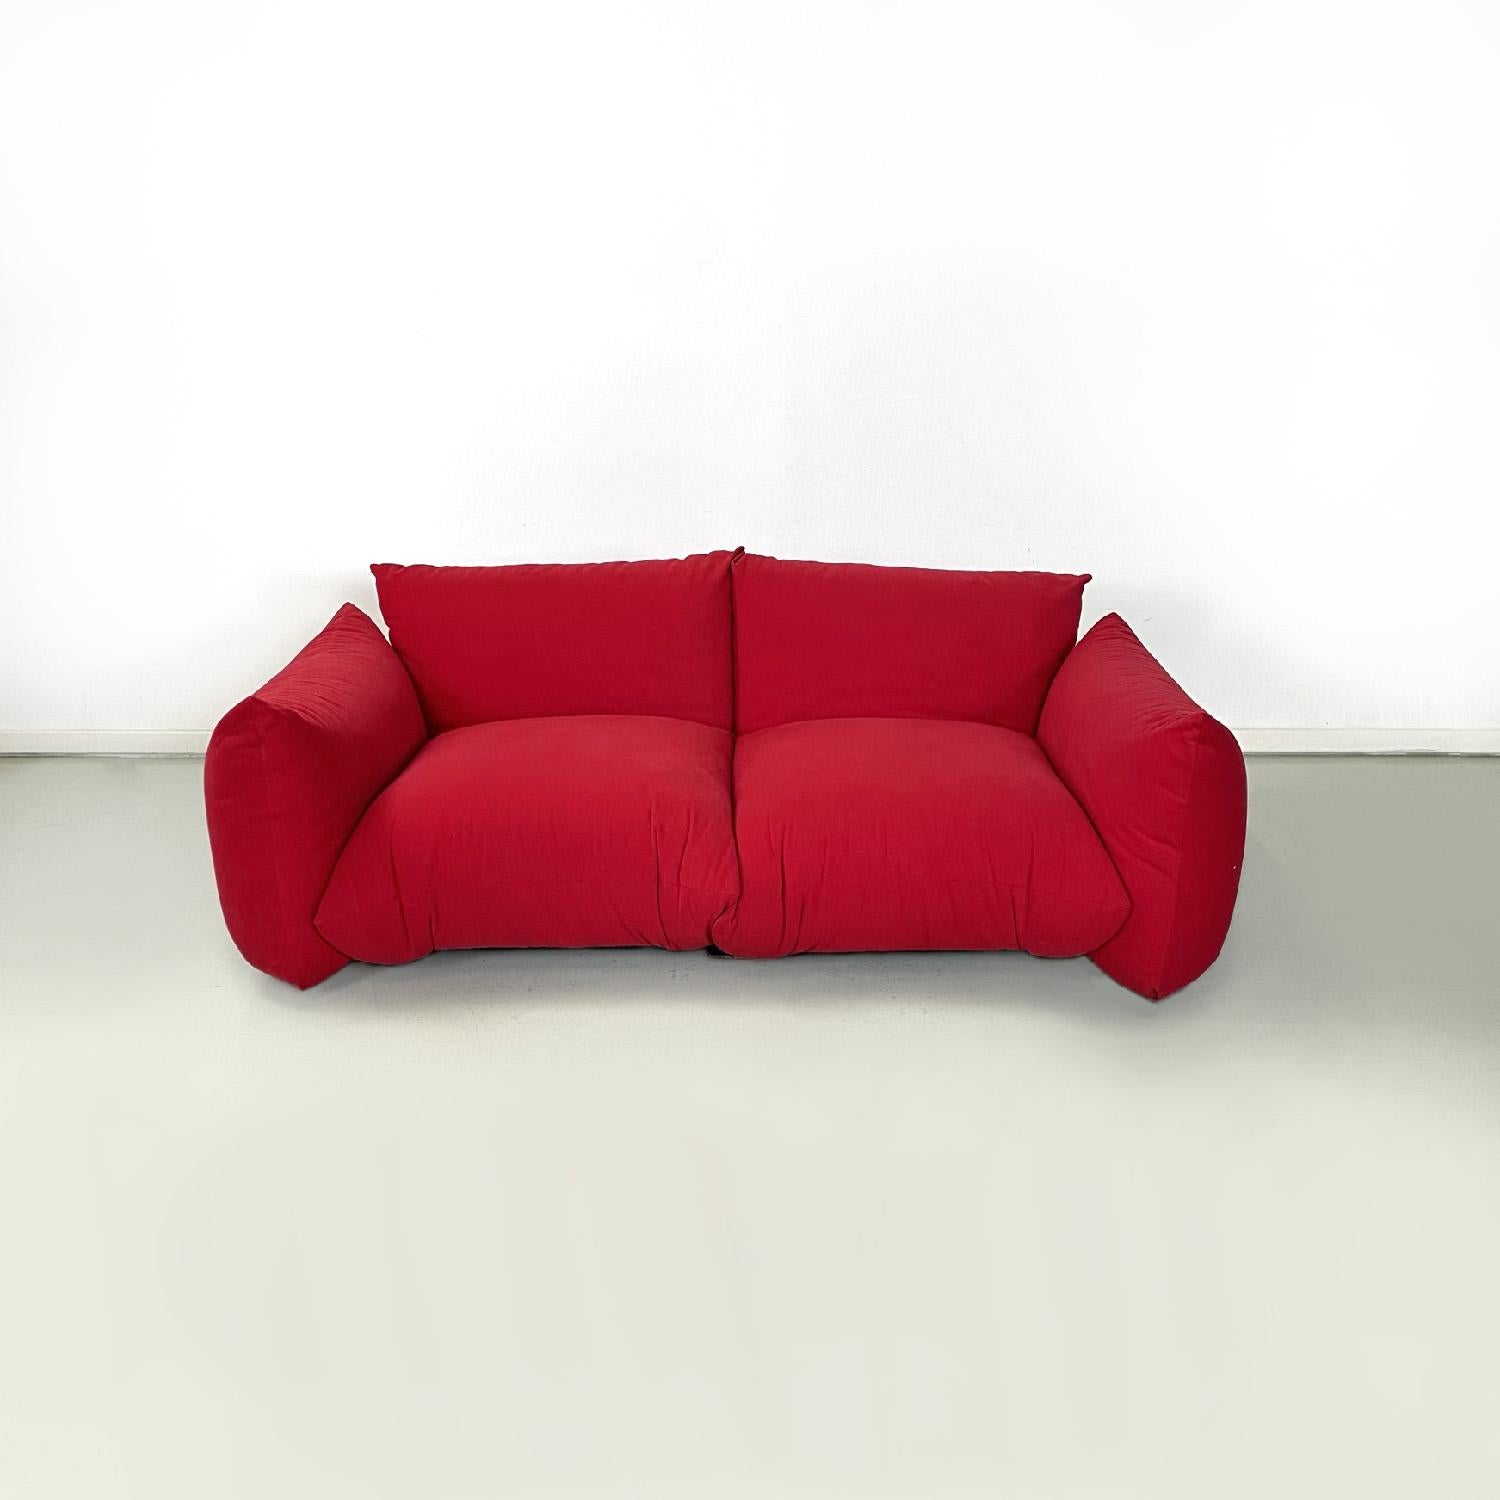 Salon rouge moderne italien Marenco par Mario Marenco pour Arflex, 1970
Salon composé de deux canapés à deux places et d'un fauteuil mod. Marenco. Les sièges rectangulaires des canapés sont composés de deux coussins rembourrés recouverts d'un tissu